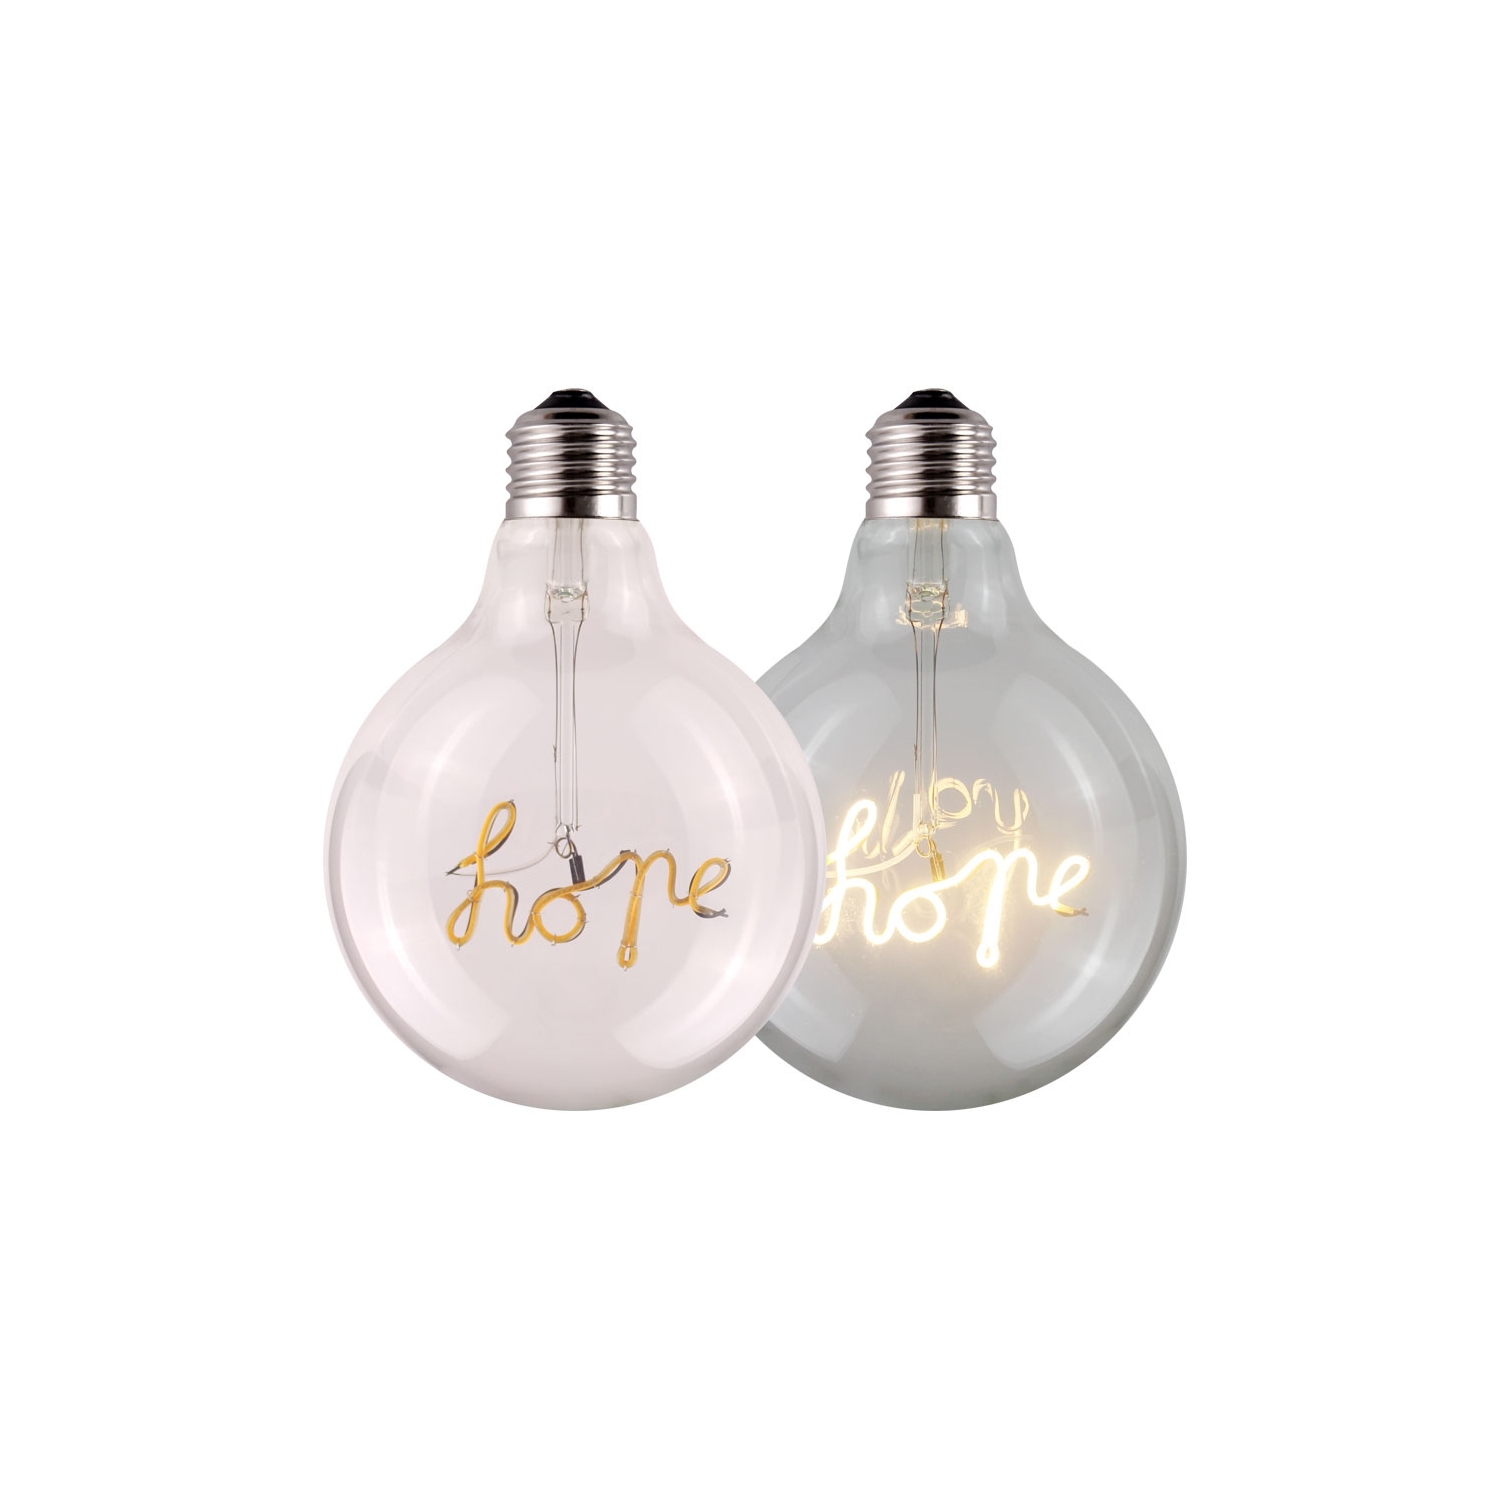 HOPE | Word Bulb